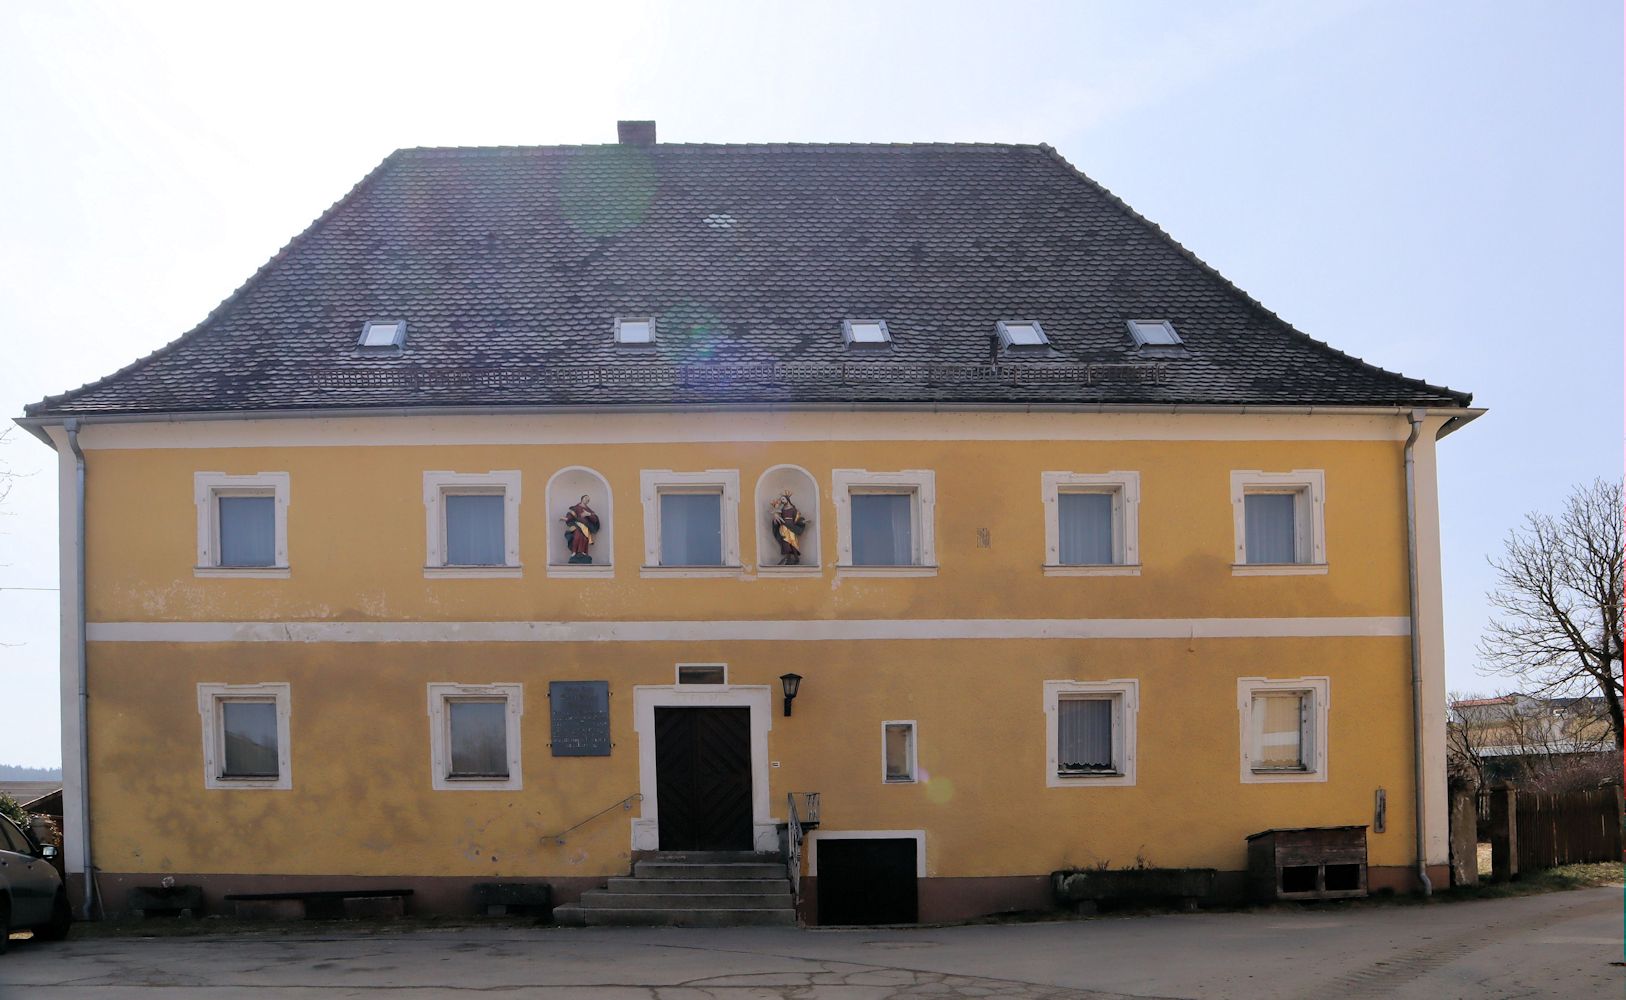 Georg Michael Wittmanns Geburtshaus in Finkenhammer, einem Ortsteil von Pleystein in der Oberpfalz, an dem eine Gedenktafel an ihn erinnert